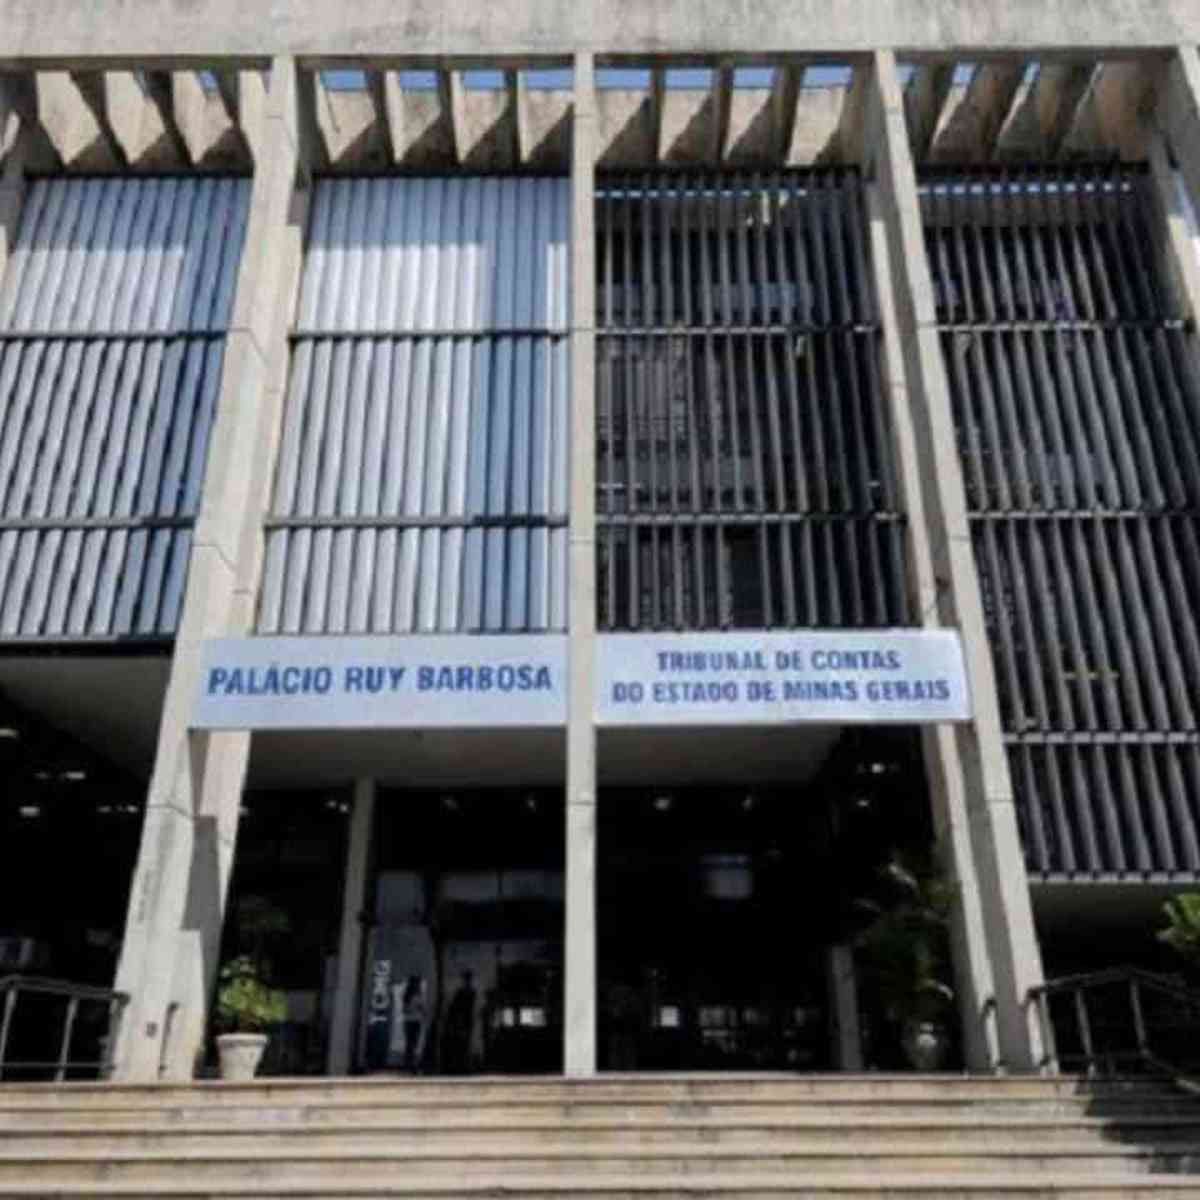 UFMG abre inscrições para Especialização em Direito Administrativo -  Tribunal de Contas do Estado de Minas Gerais / TCE-MG